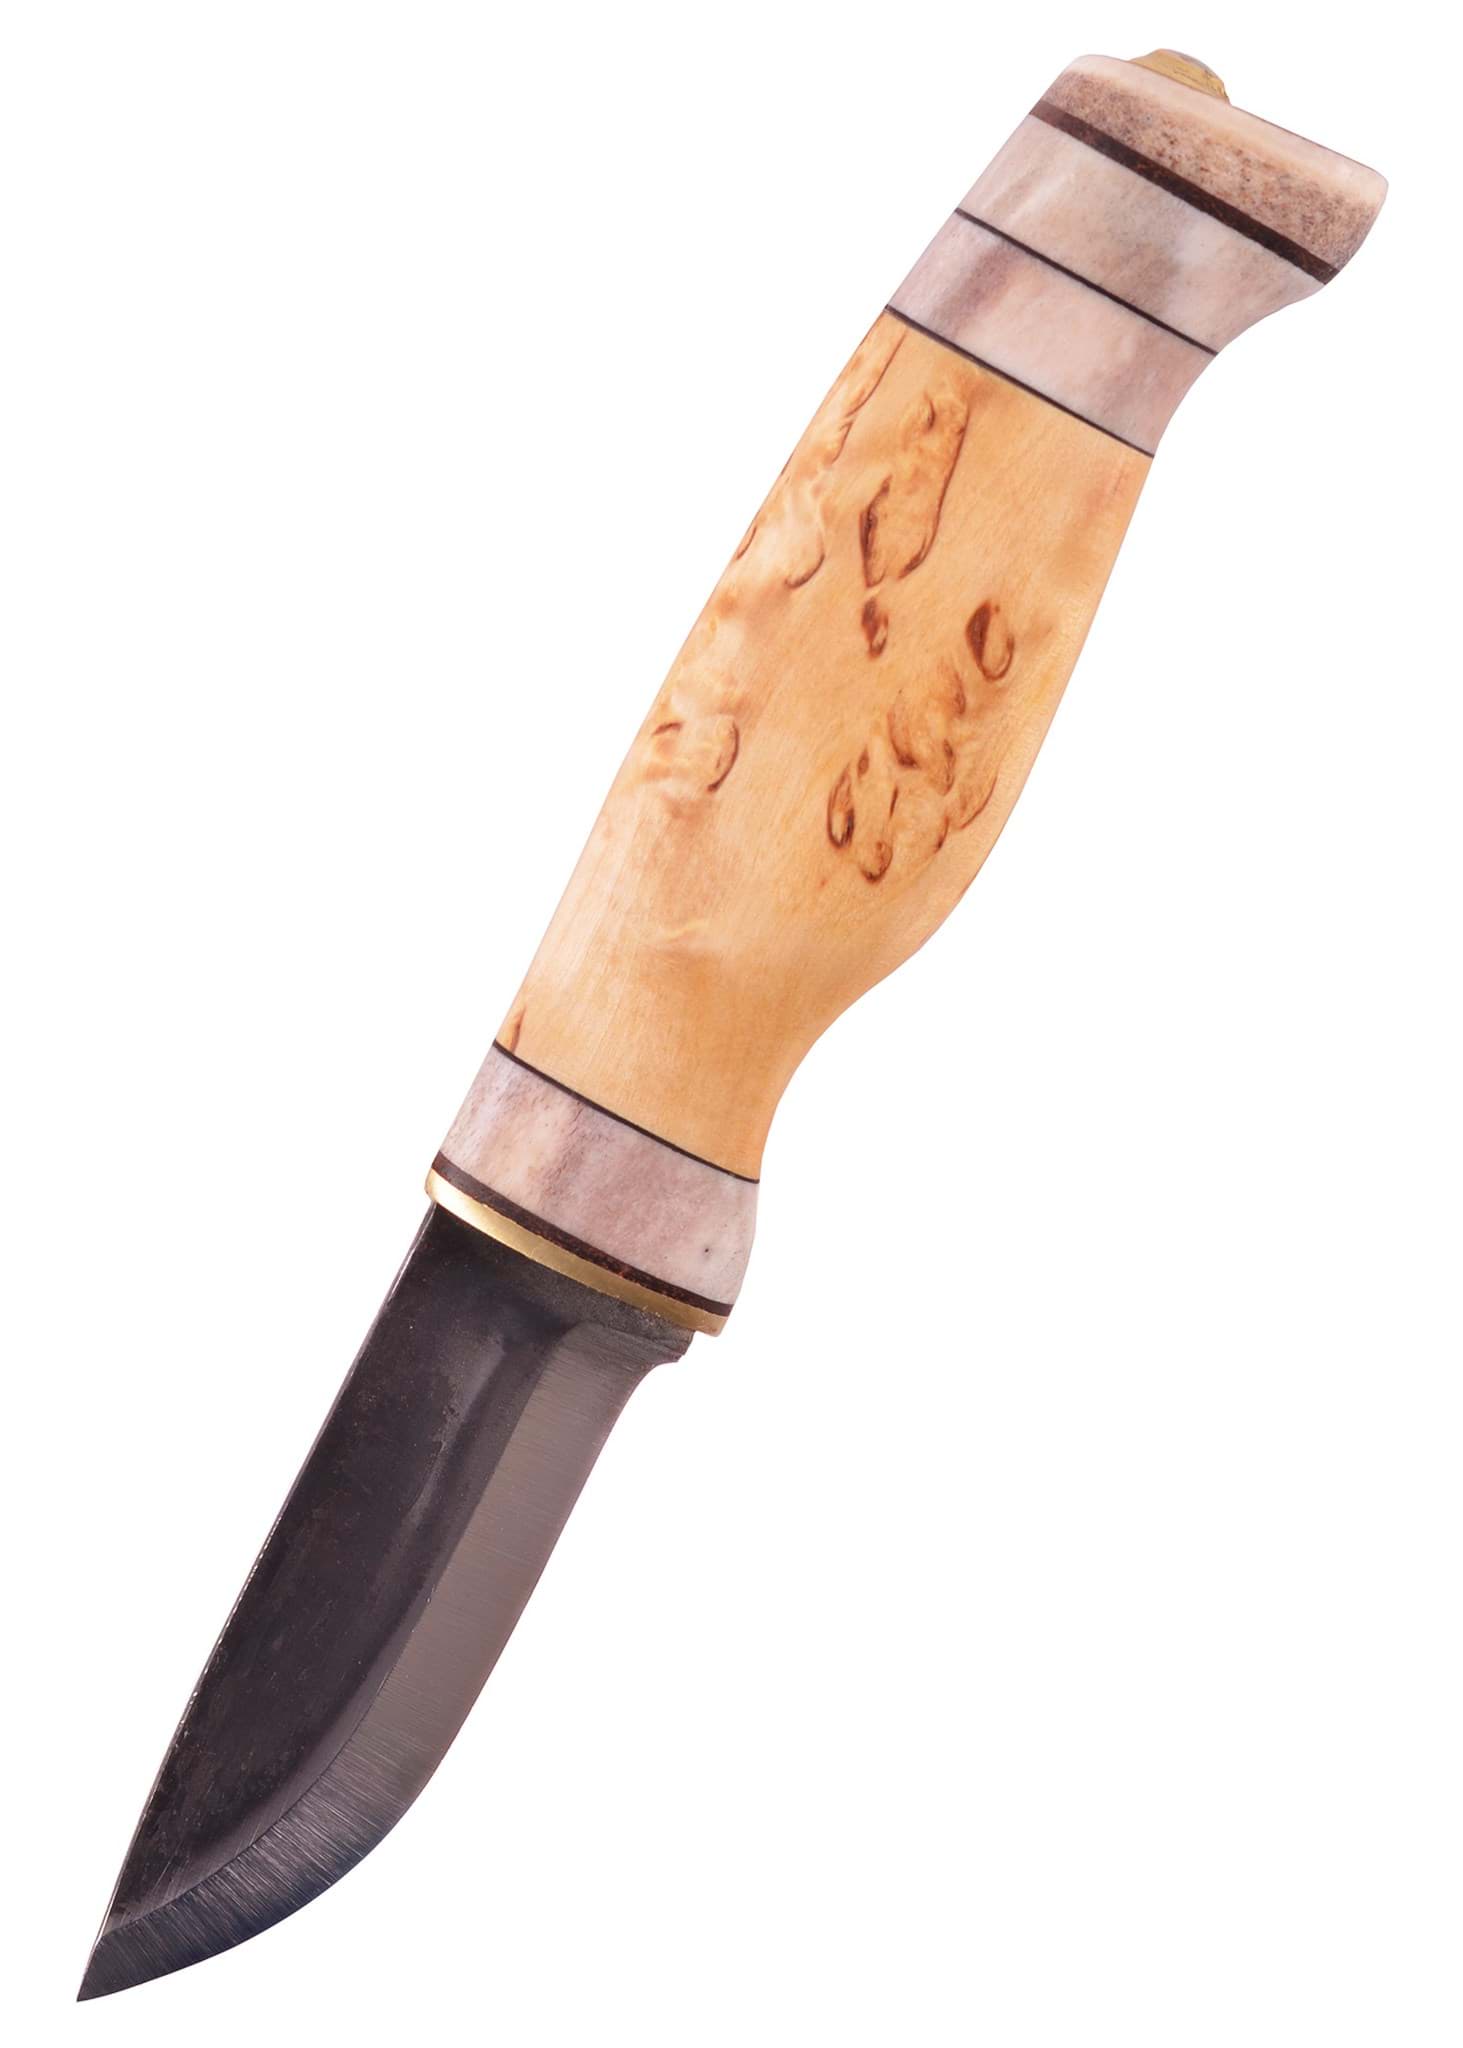 Image de Wood Jewel - Couteau de Laponie Lappipuukko